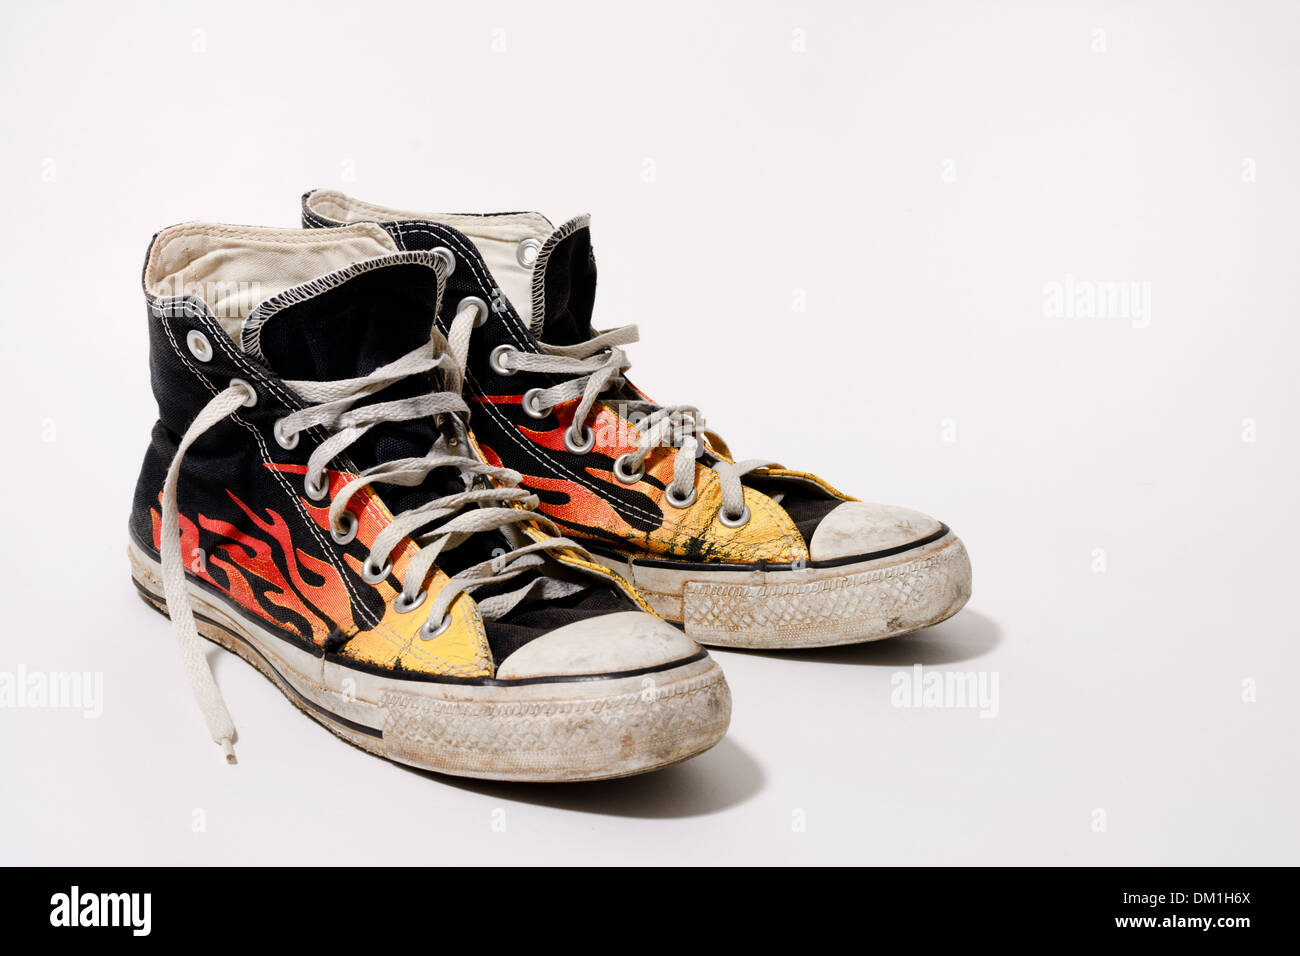 Abgenutzt und schmutzig Converse All Star Schuhe isoliert auf weißem Hintergrund Stockfoto